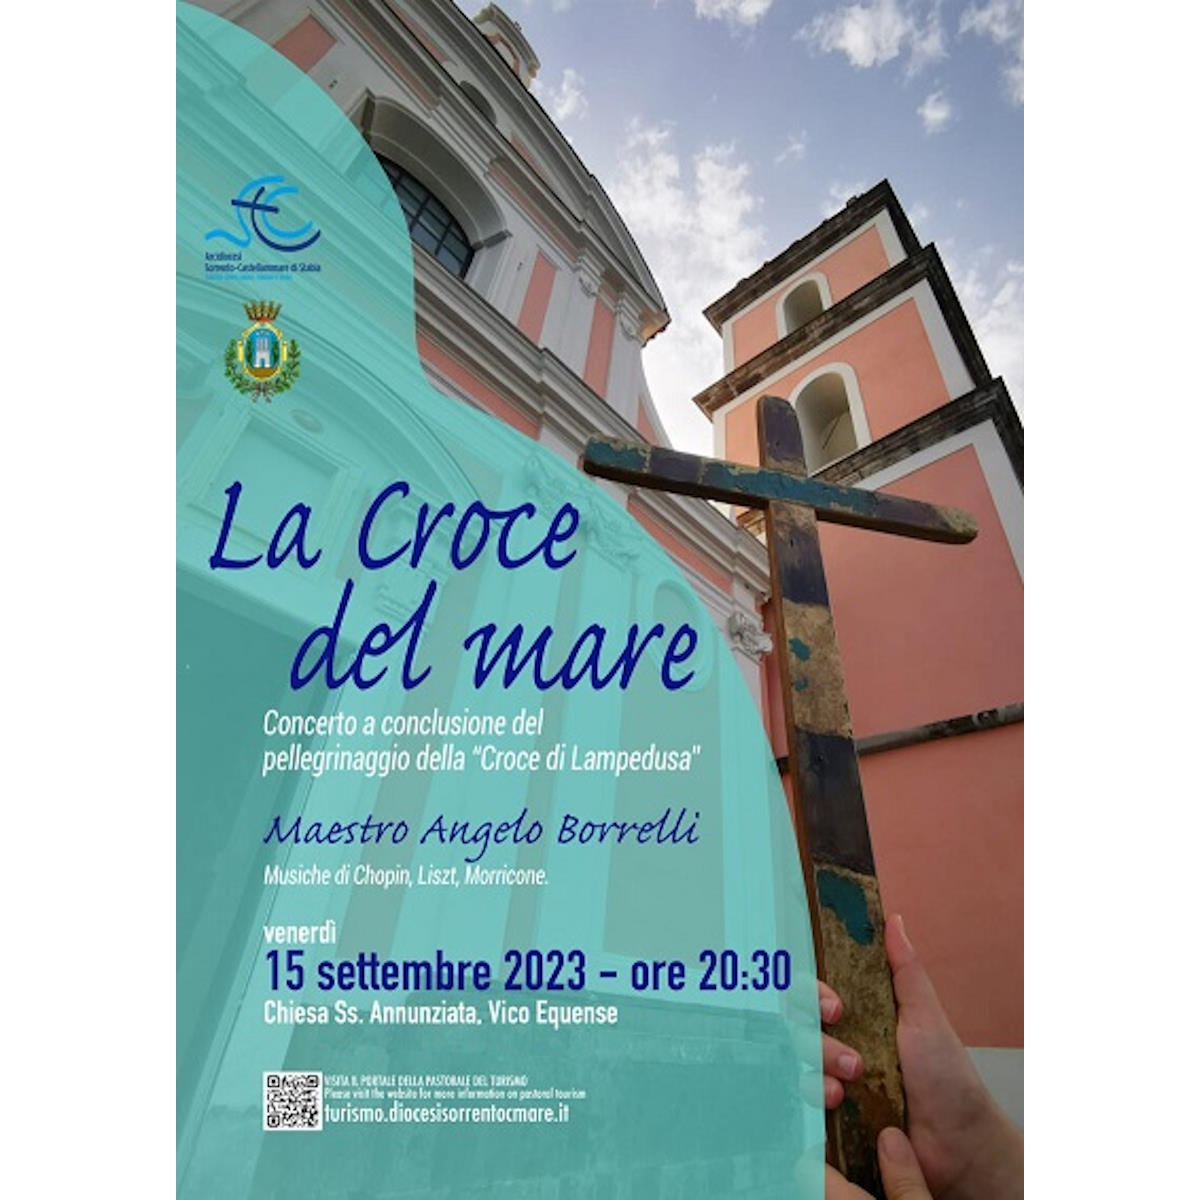 Concerto “La Croce del mare” a conclusione del pellegrinaggio della “Croce di Lampedusa”